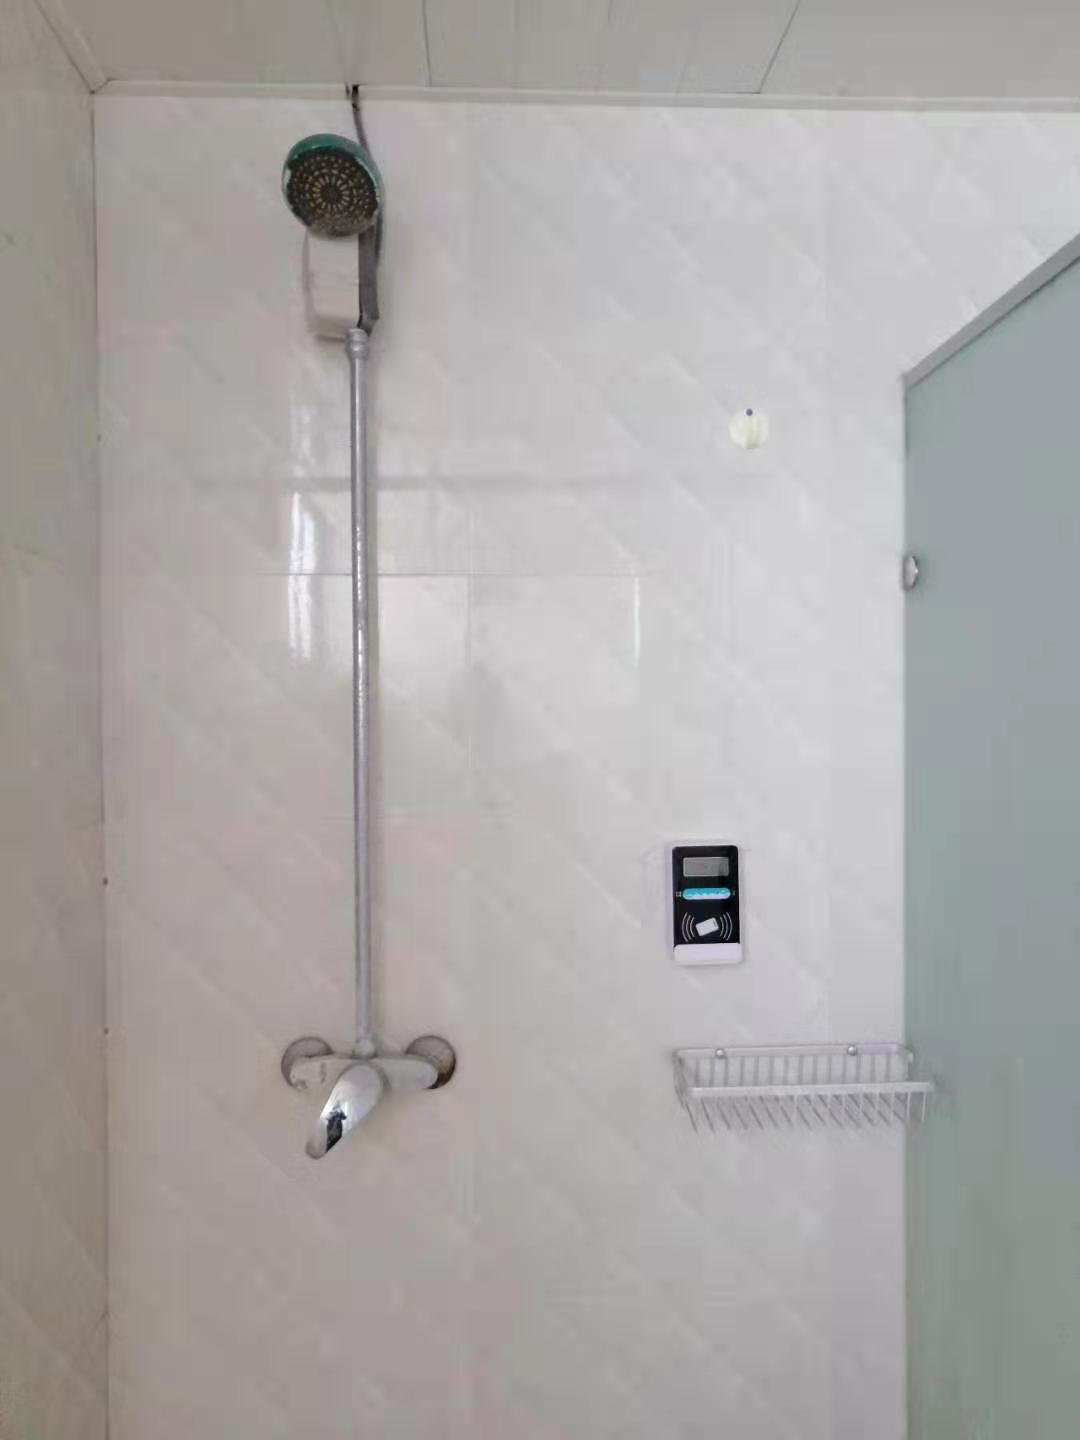 洗澡打卡器,浴室節水管理系統 2